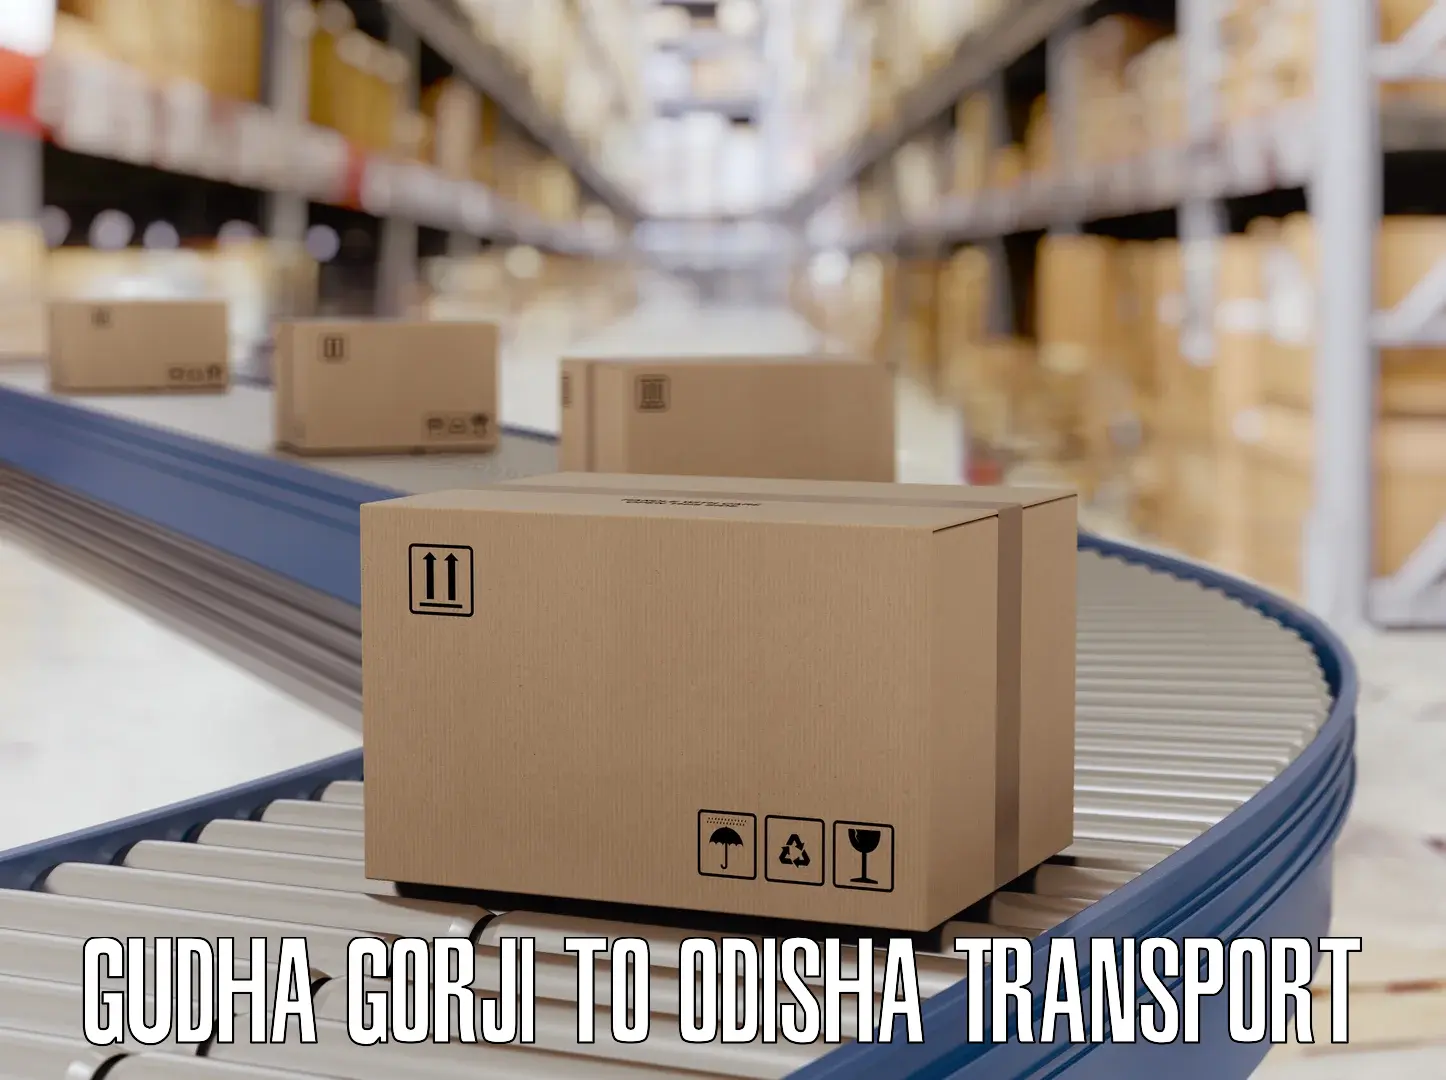 Furniture transport service Gudha Gorji to Pallahara